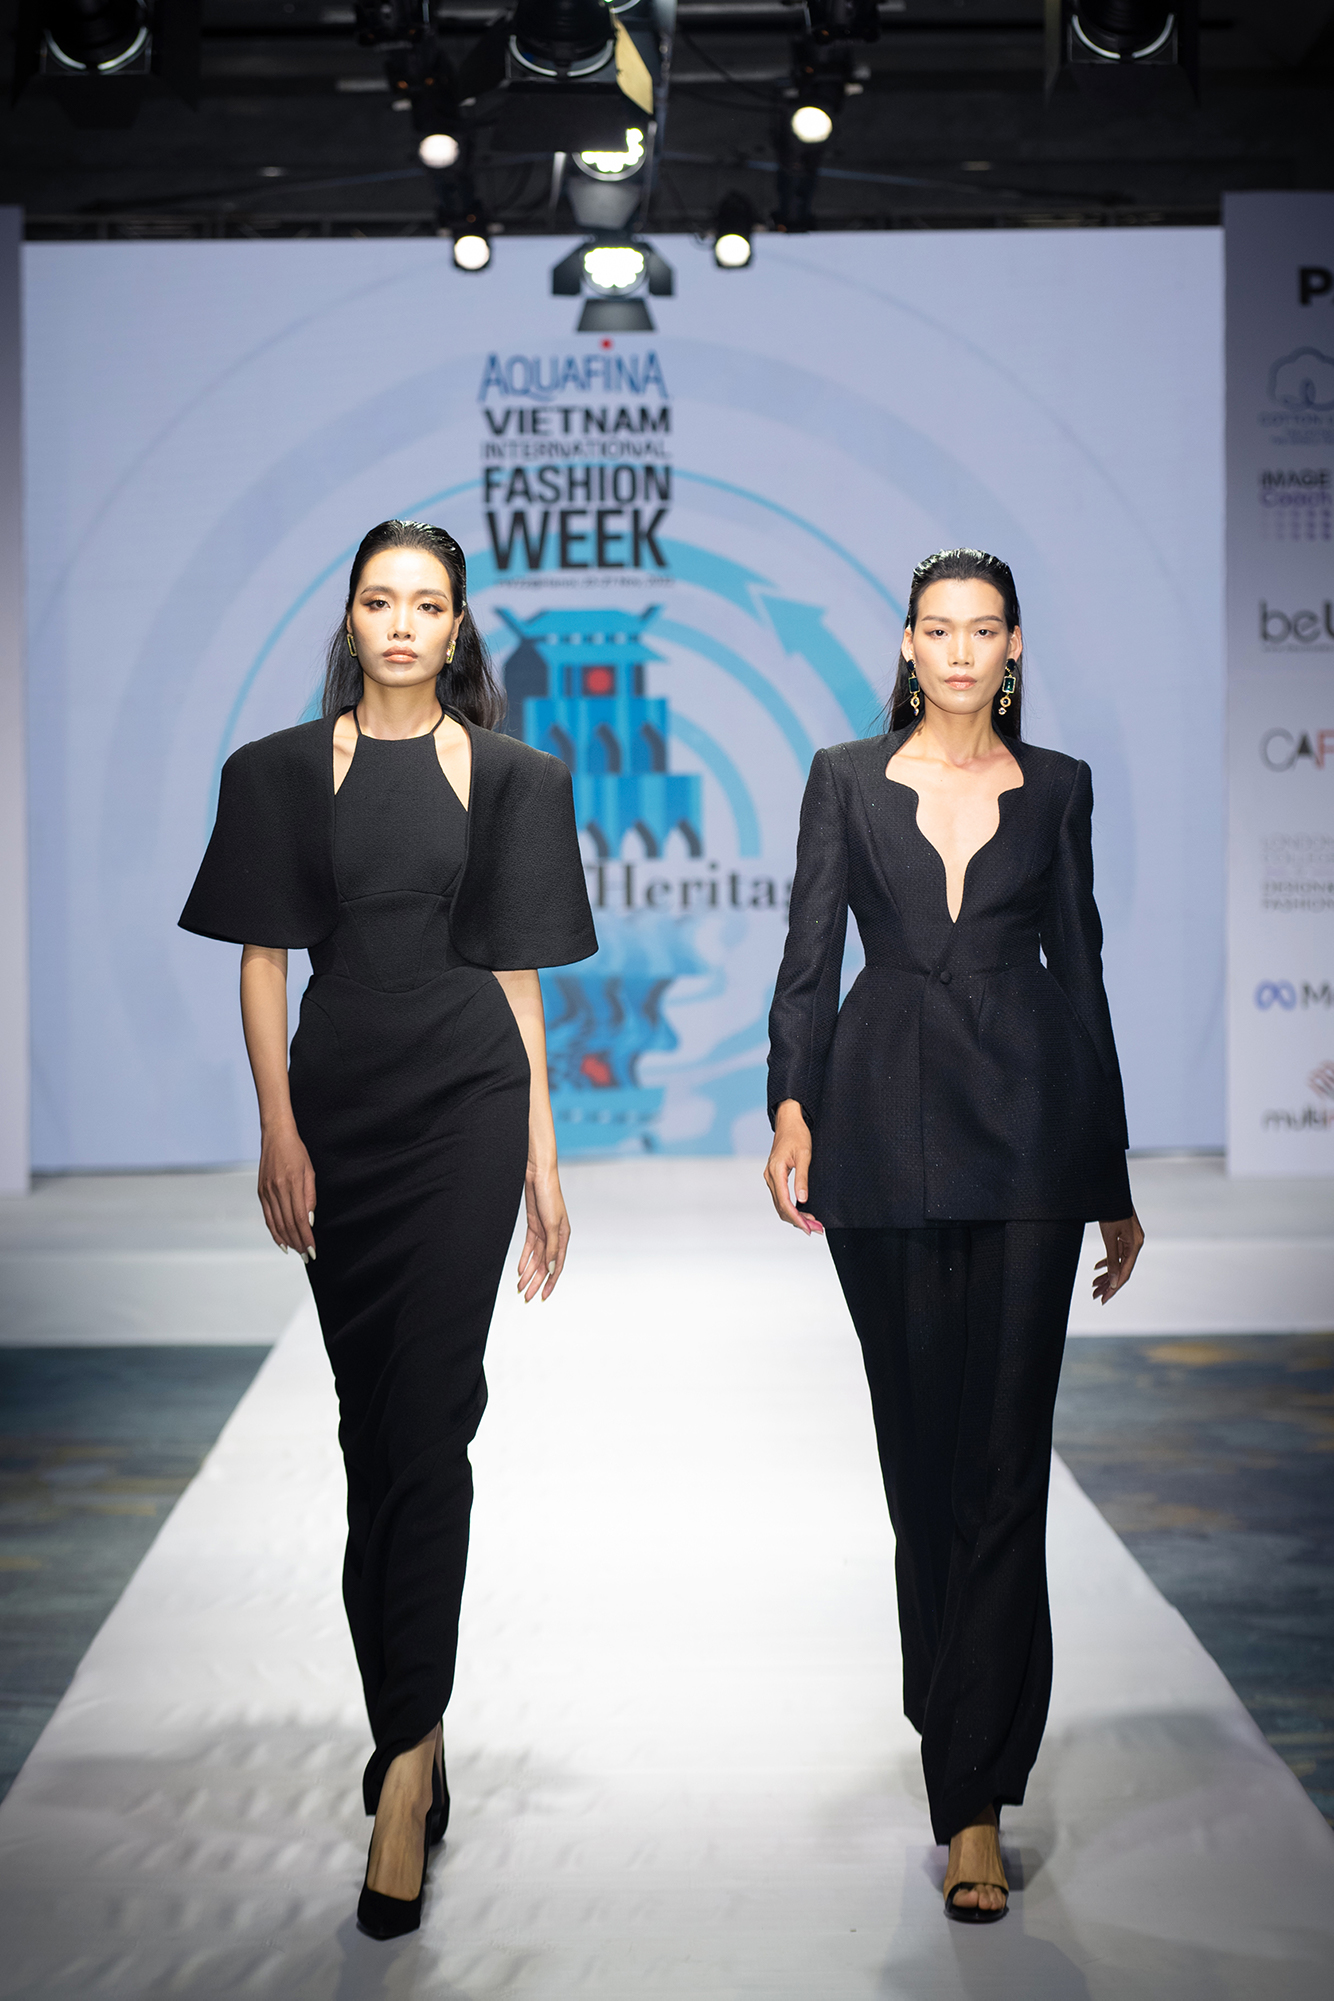 4. NTK Hoàng Minh Hà - NTK mở màn Aquafina Vietnam International Fashion Week Fall Winter 2022 với 2 look nổi bật trong BST sắp được ra mắt (1)